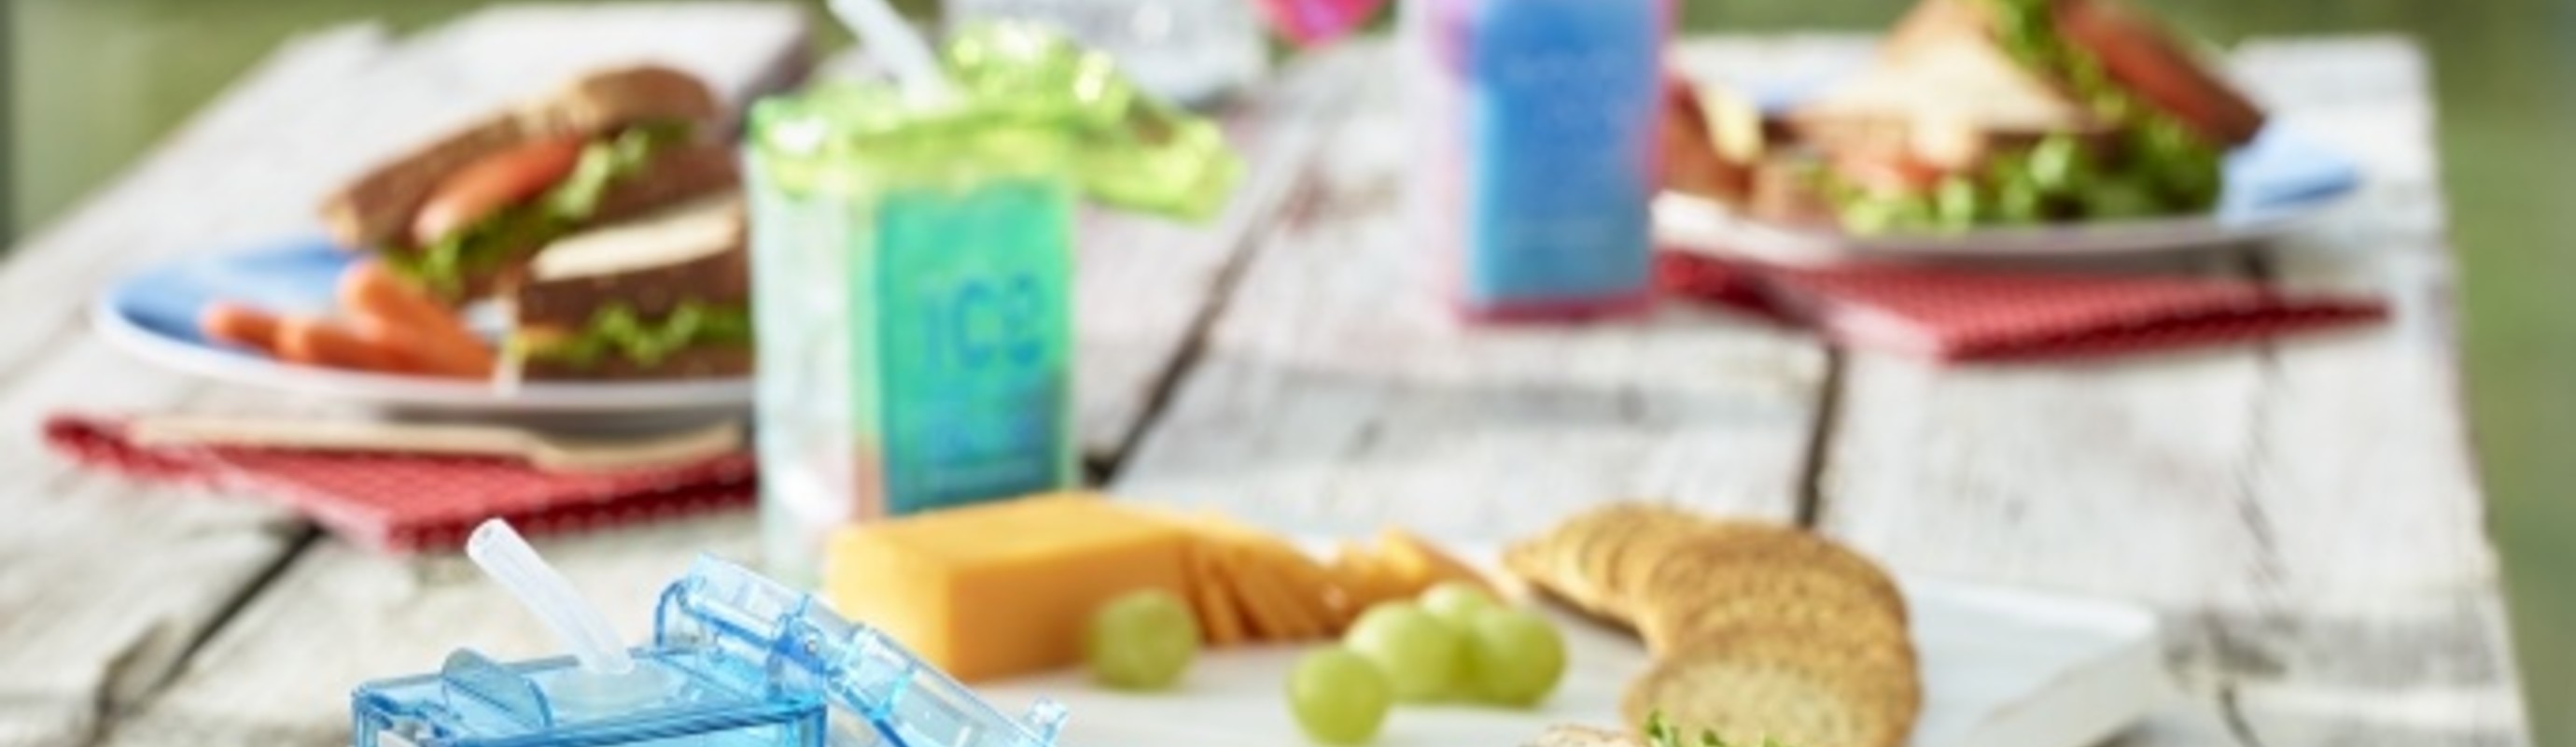 Recepten voor smoothies en fruitwater voor kinderen